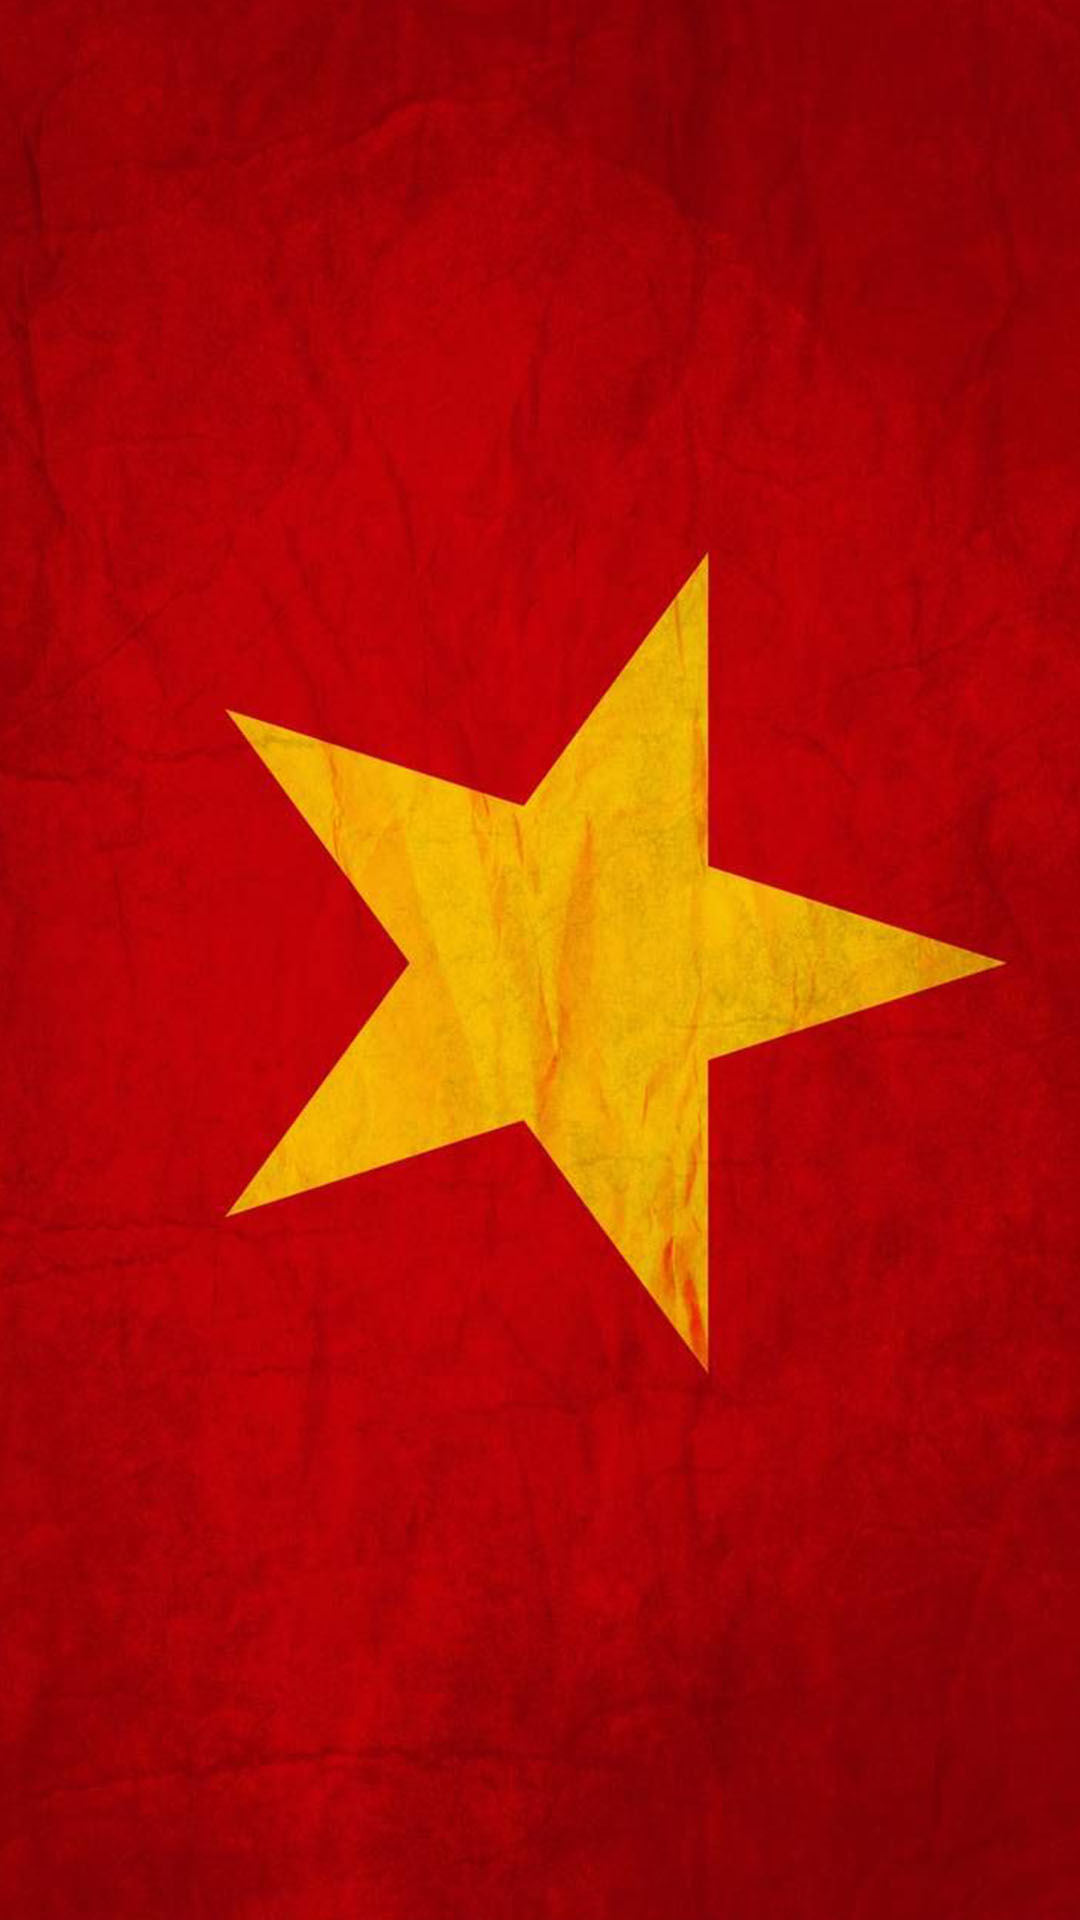 Trang trí máy tính và điện thoại của bạn bằng Hình nền cờ Việt Nam. Với màu sắc rực rỡ, đầy tính thẩm mỹ cùng những hình ảnh đại diện cho Việt Nam, bạn sẽ mang lại một phong cách mới cùng sự tự hào với quốc gia của mình.